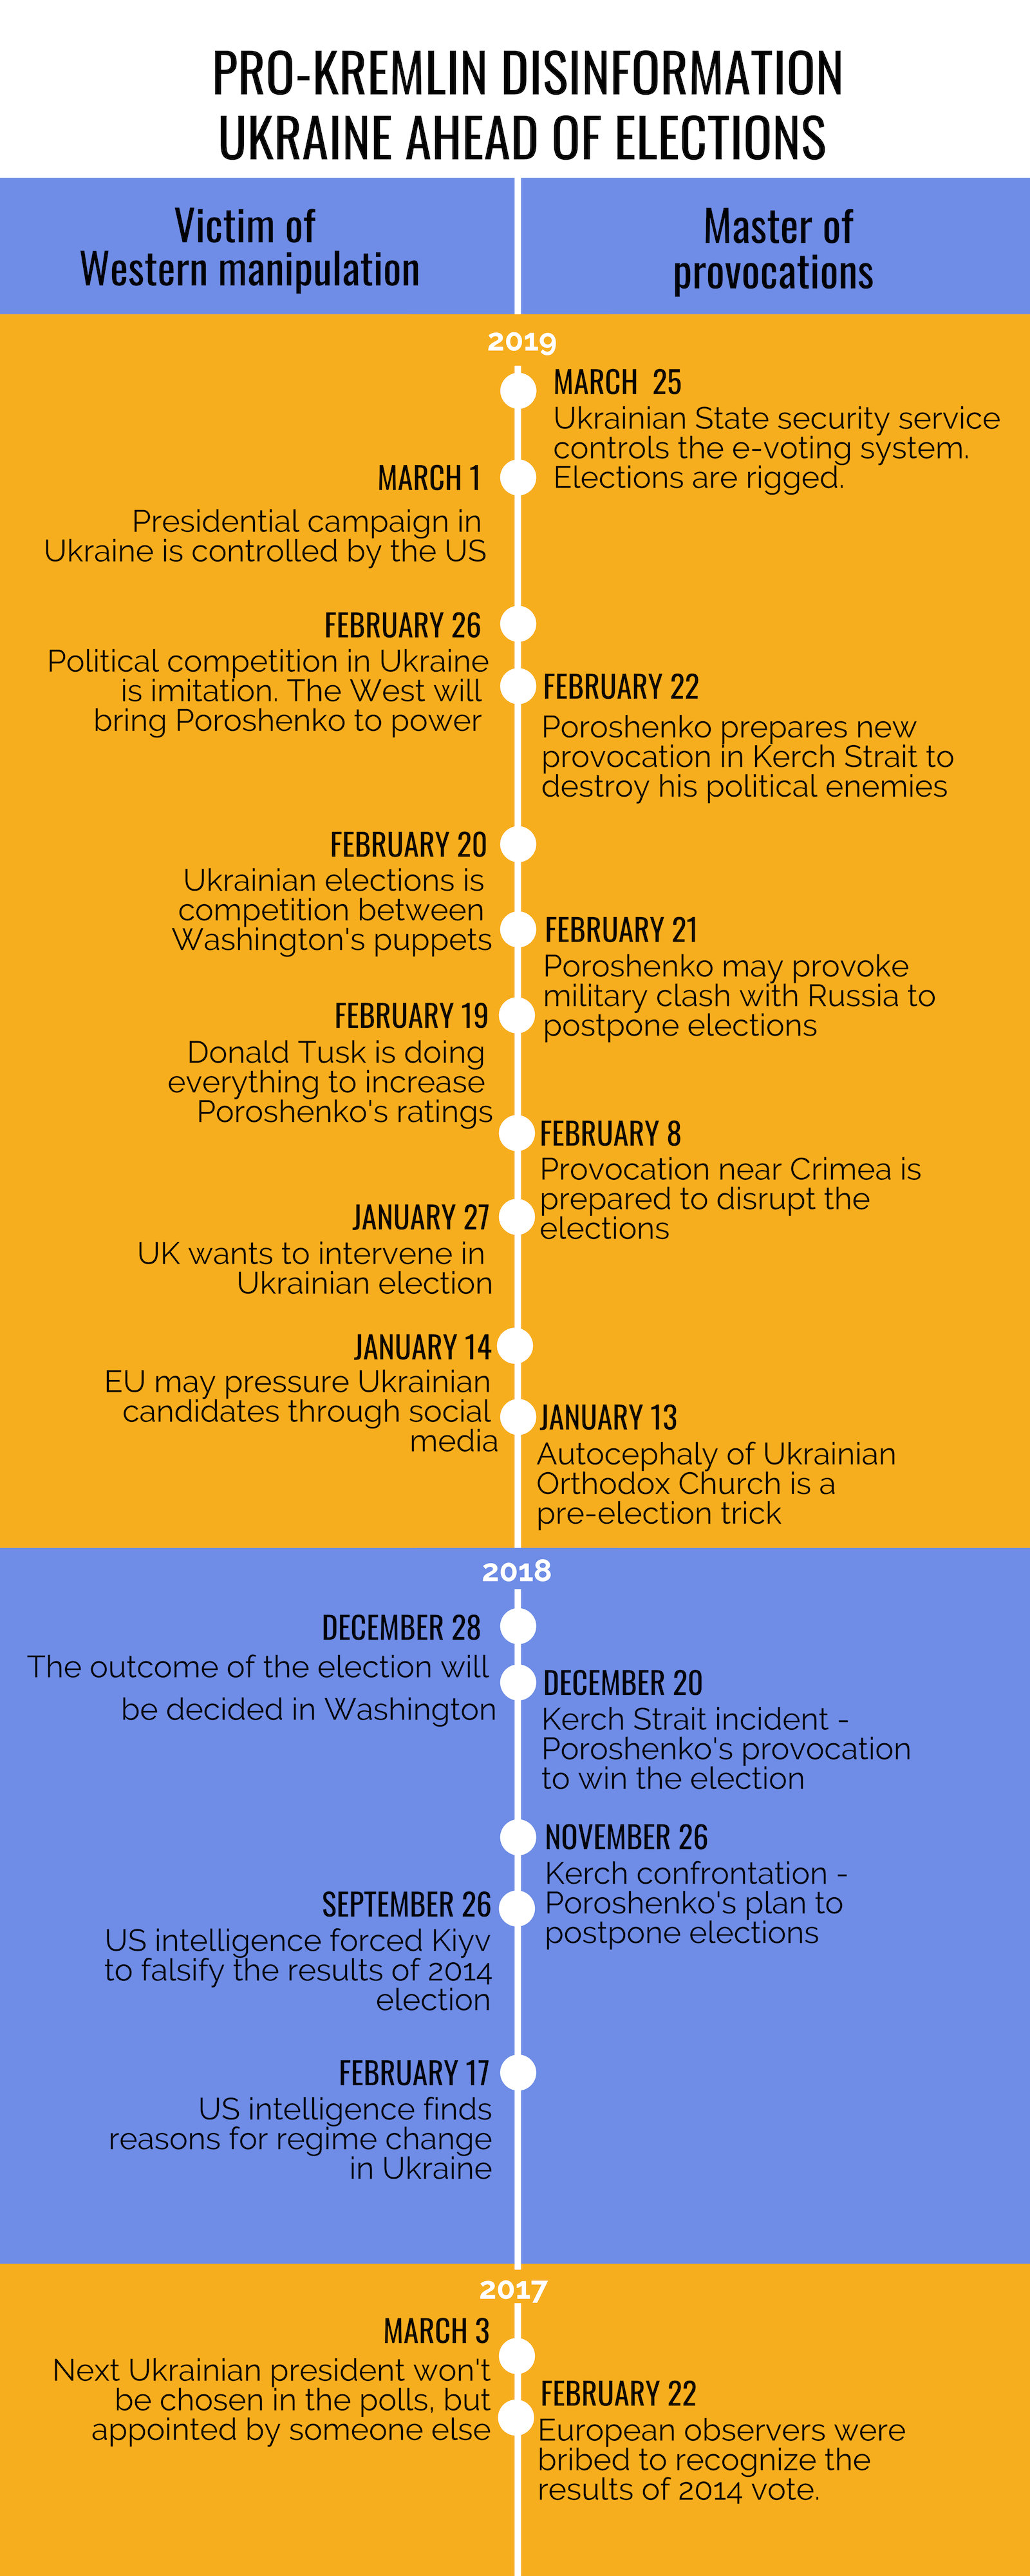 pro-Kremlin dininformation ahead of Ukrainian elections